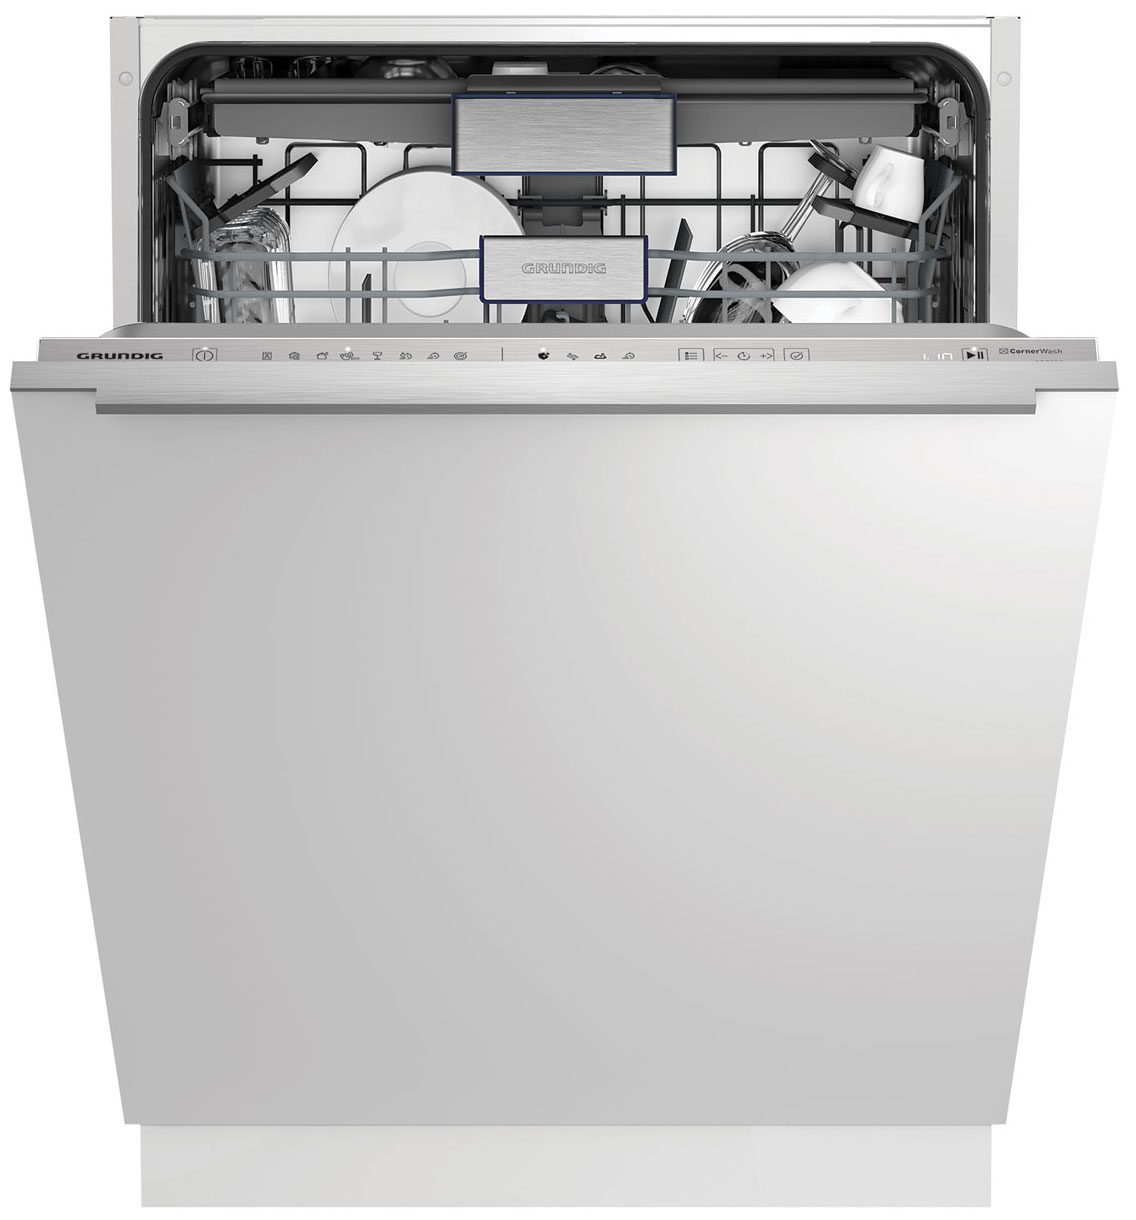 Встраиваемая посудомоечная машина Grundig GNVP4541C встраиваемая посудомоечная машина grundig gnvp4541c